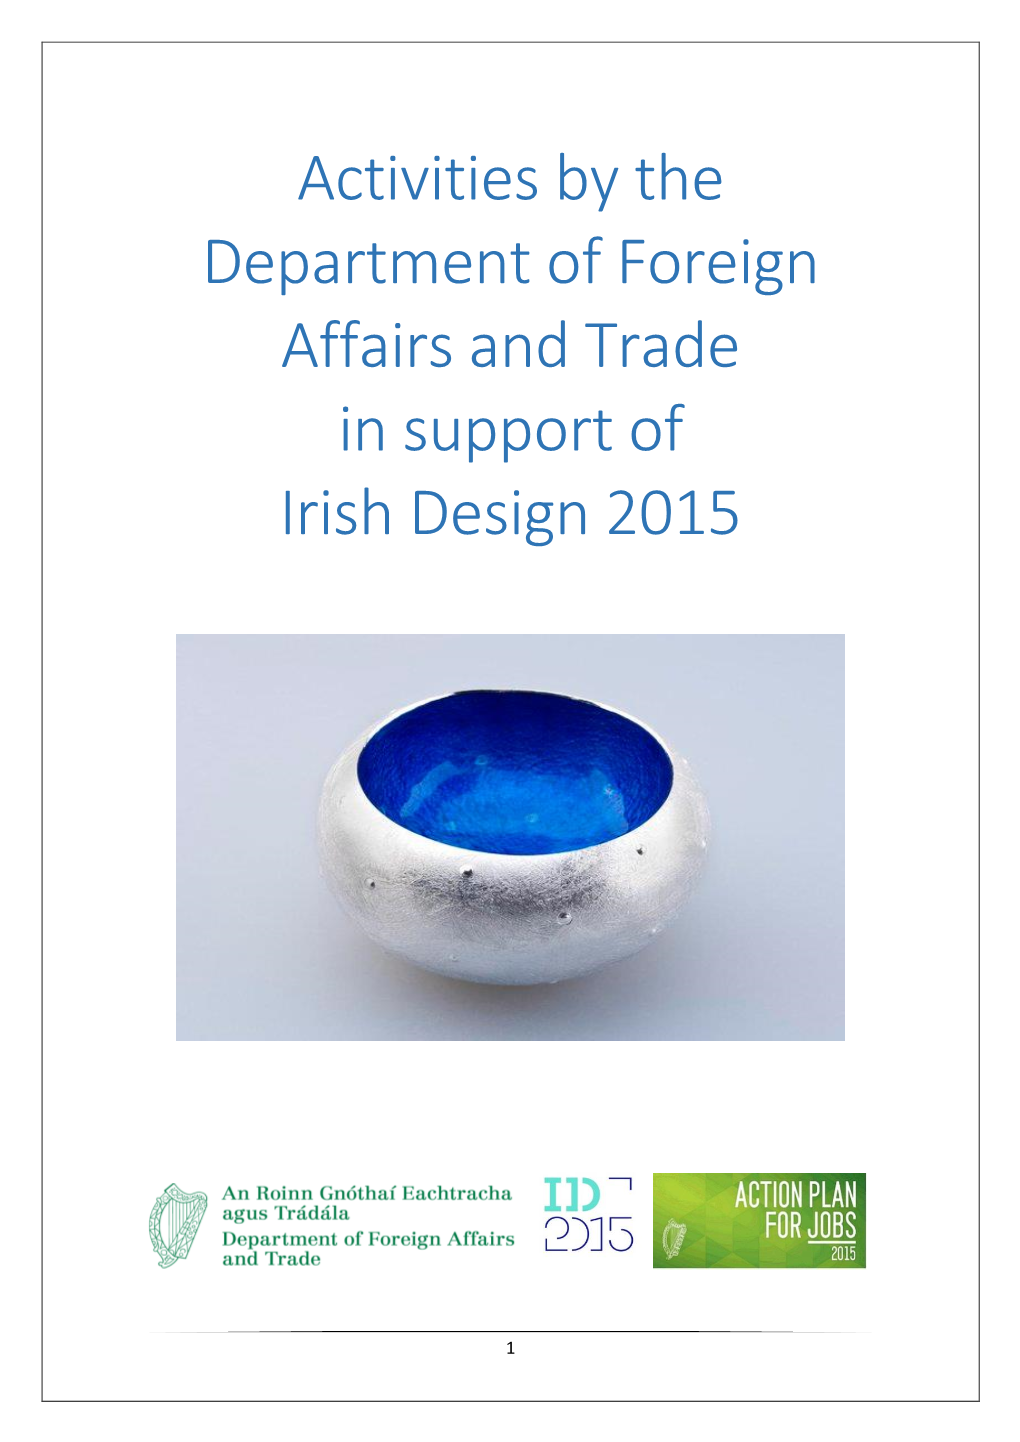 Report Highlighting Irish Design 2015 Activities